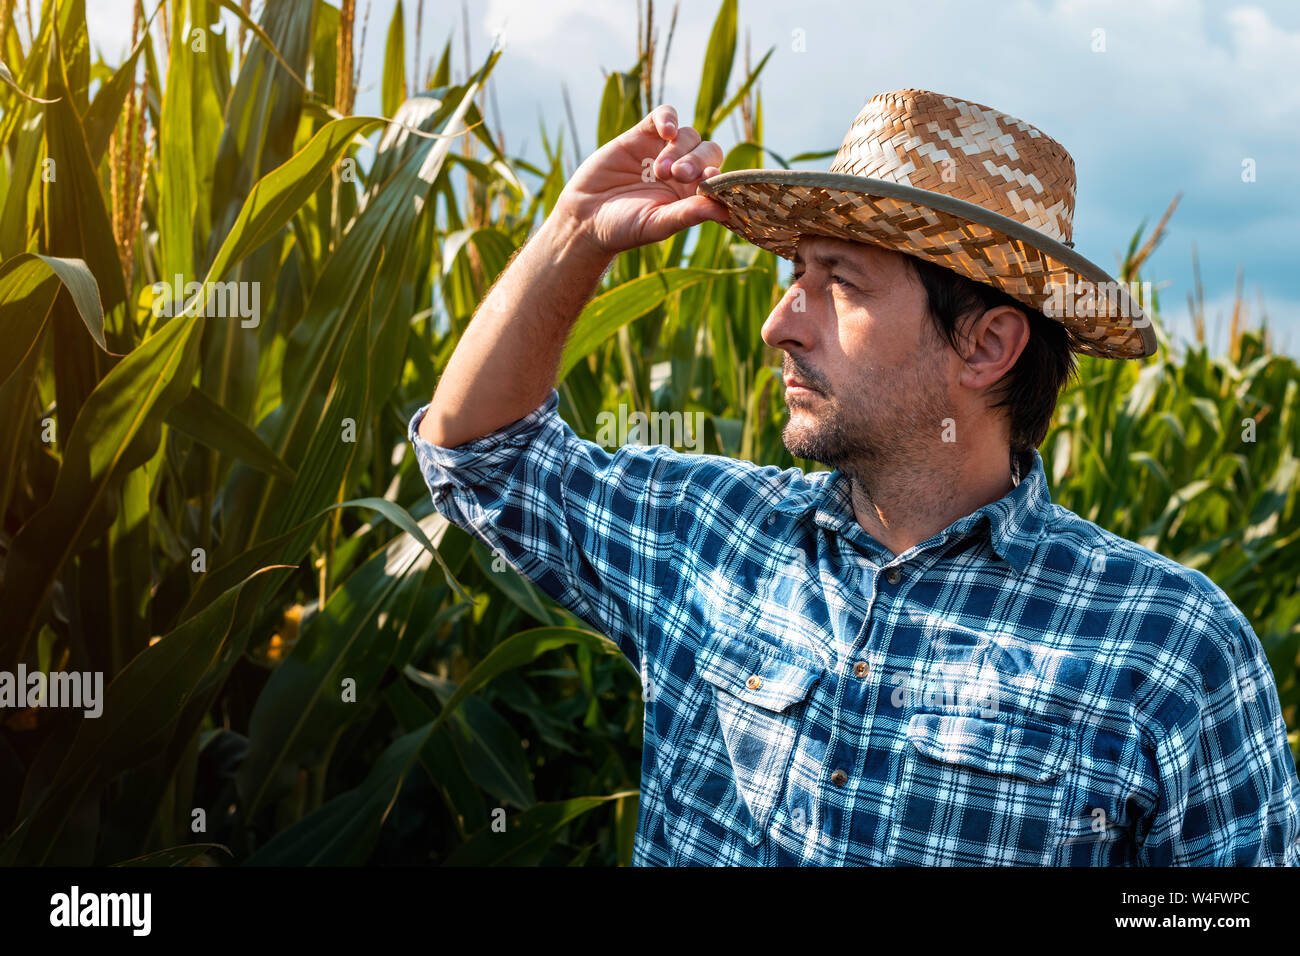 Agronom untersucht Entwicklung von Mais in Bebautes Feld. Portrait von verantwortlichen erwachsenen männlichen Spezialisten analysieren Wachstum Mais auf Plantat Stockfoto